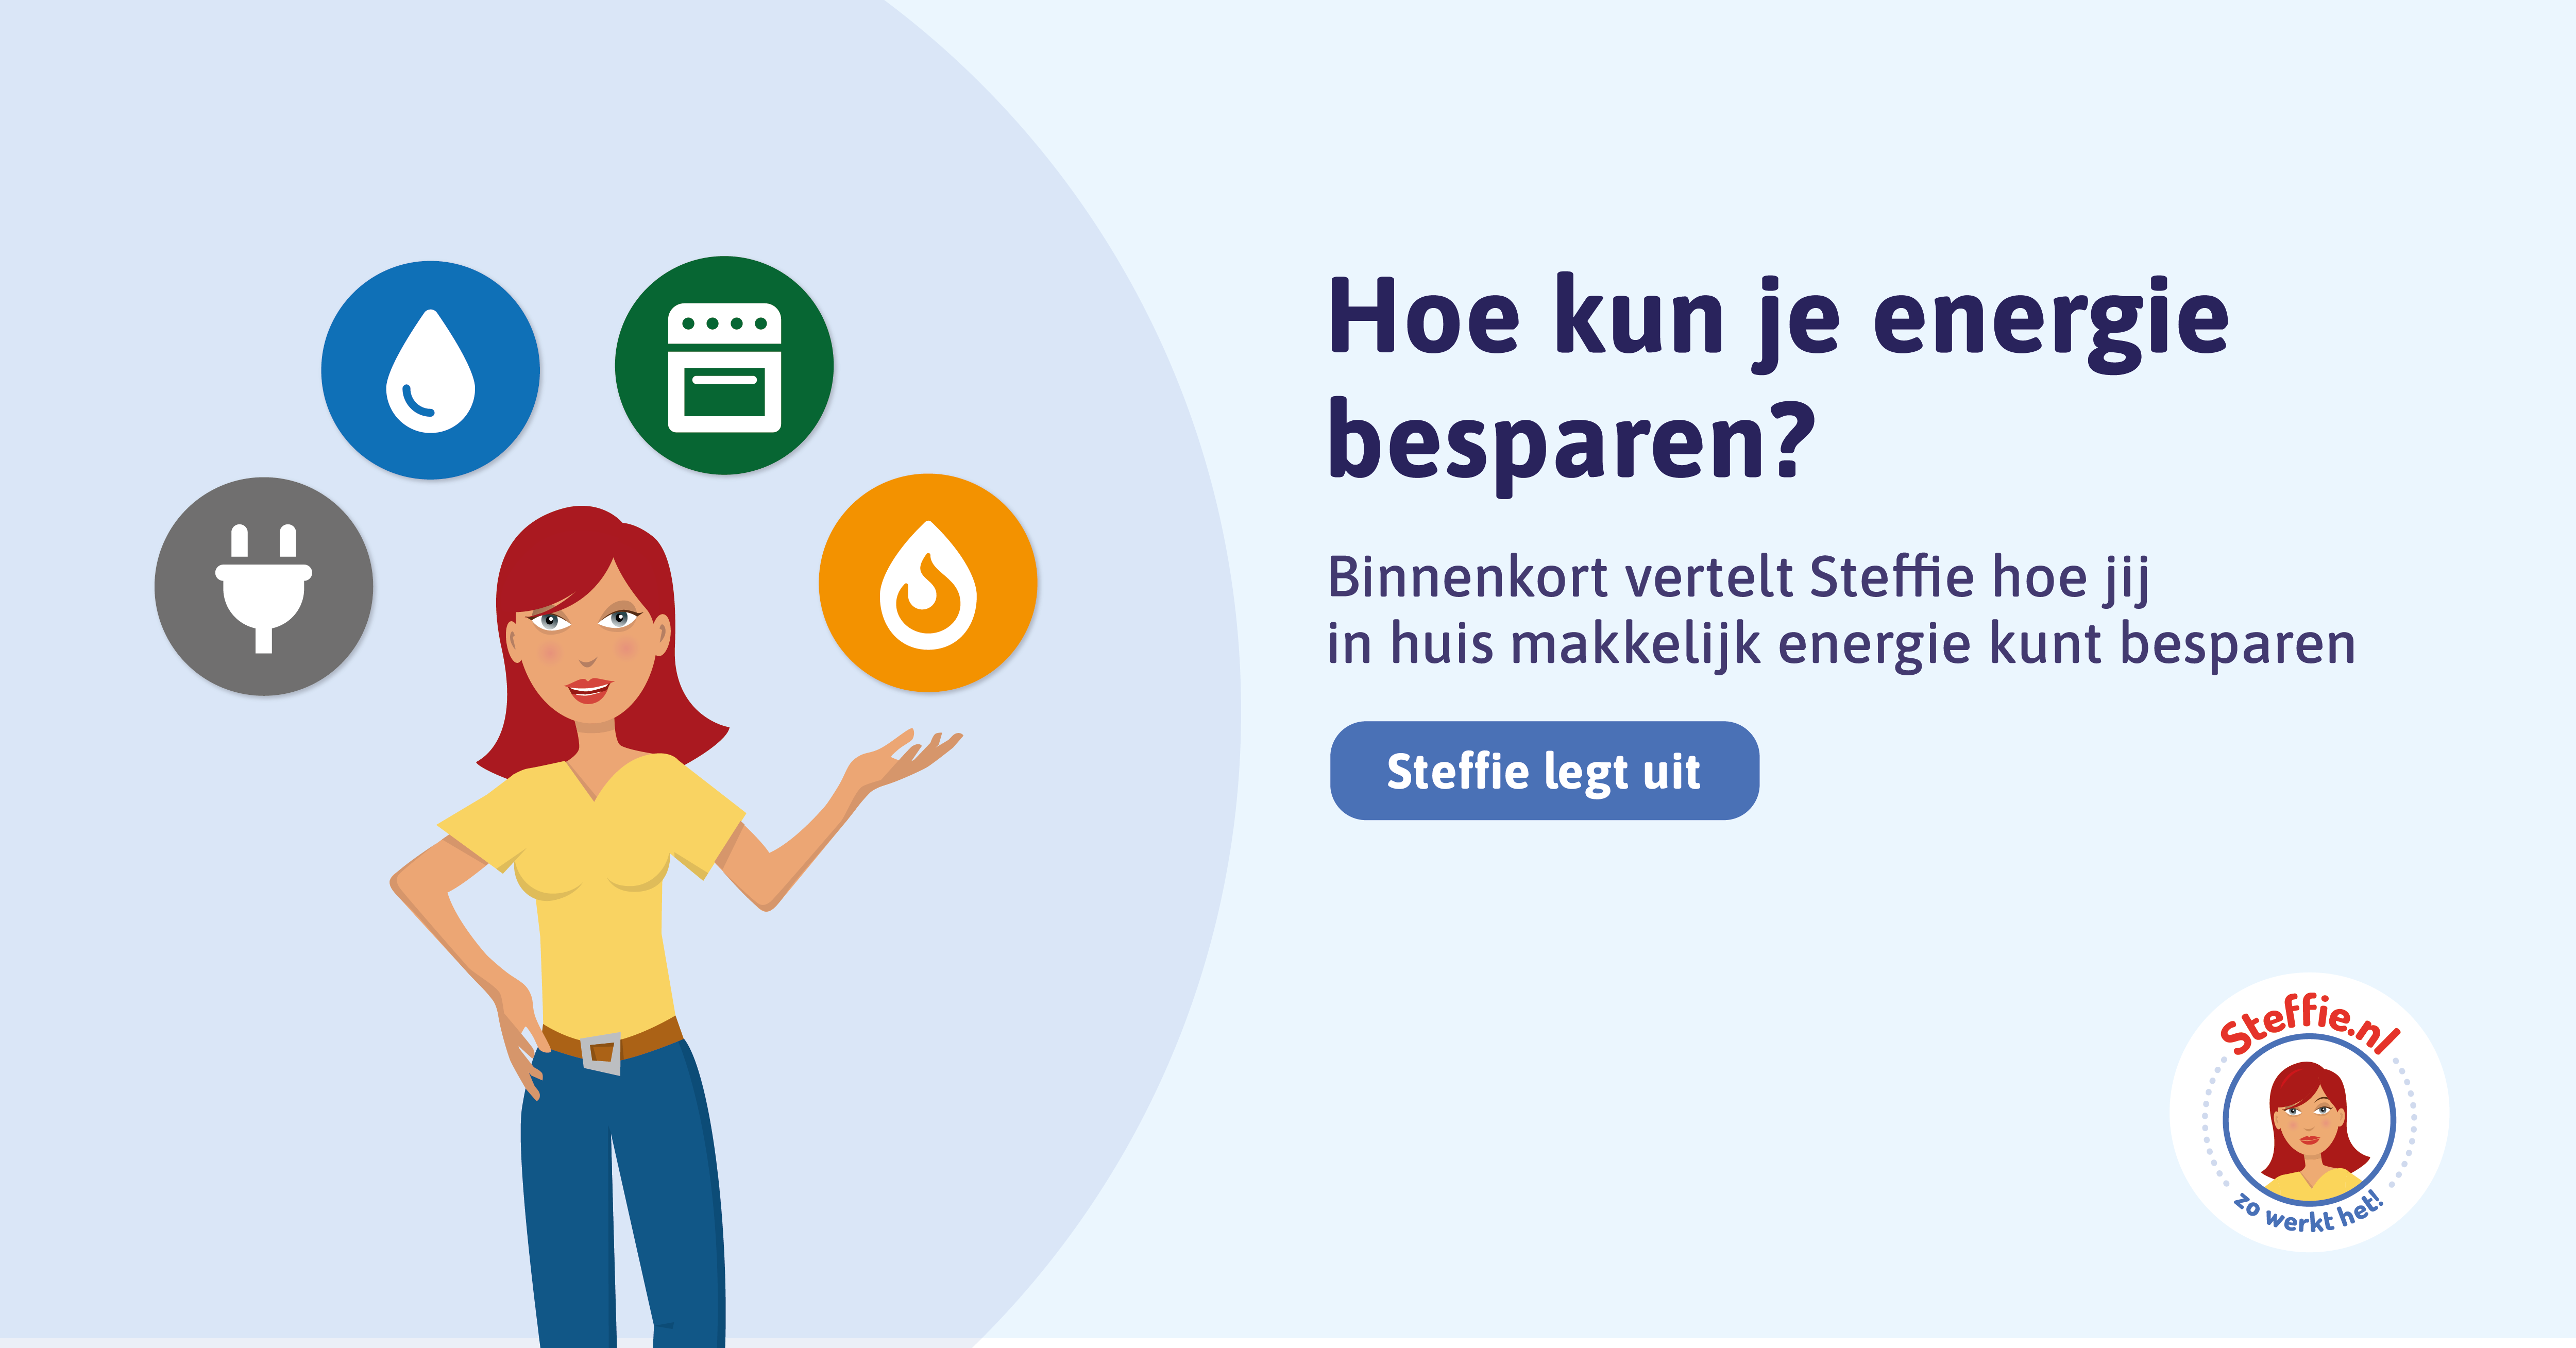 Meer weten over energie besparen in eenvoudige taal? Kijk dan op Energie.steffie.nl